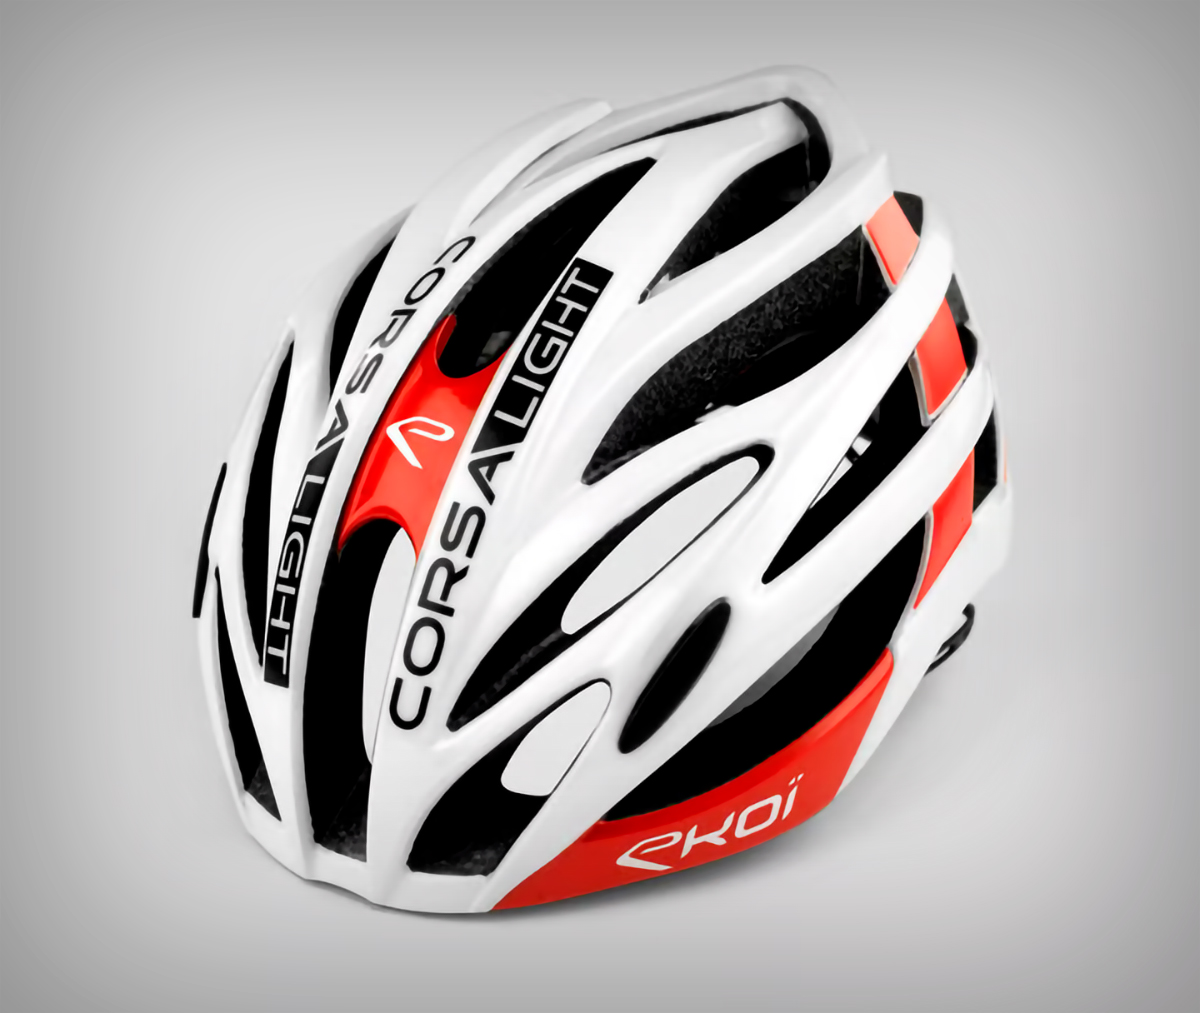 El Ekoï Corsa Light, el casco superventas de la marca, estrena nueva estética y un cierre magnético